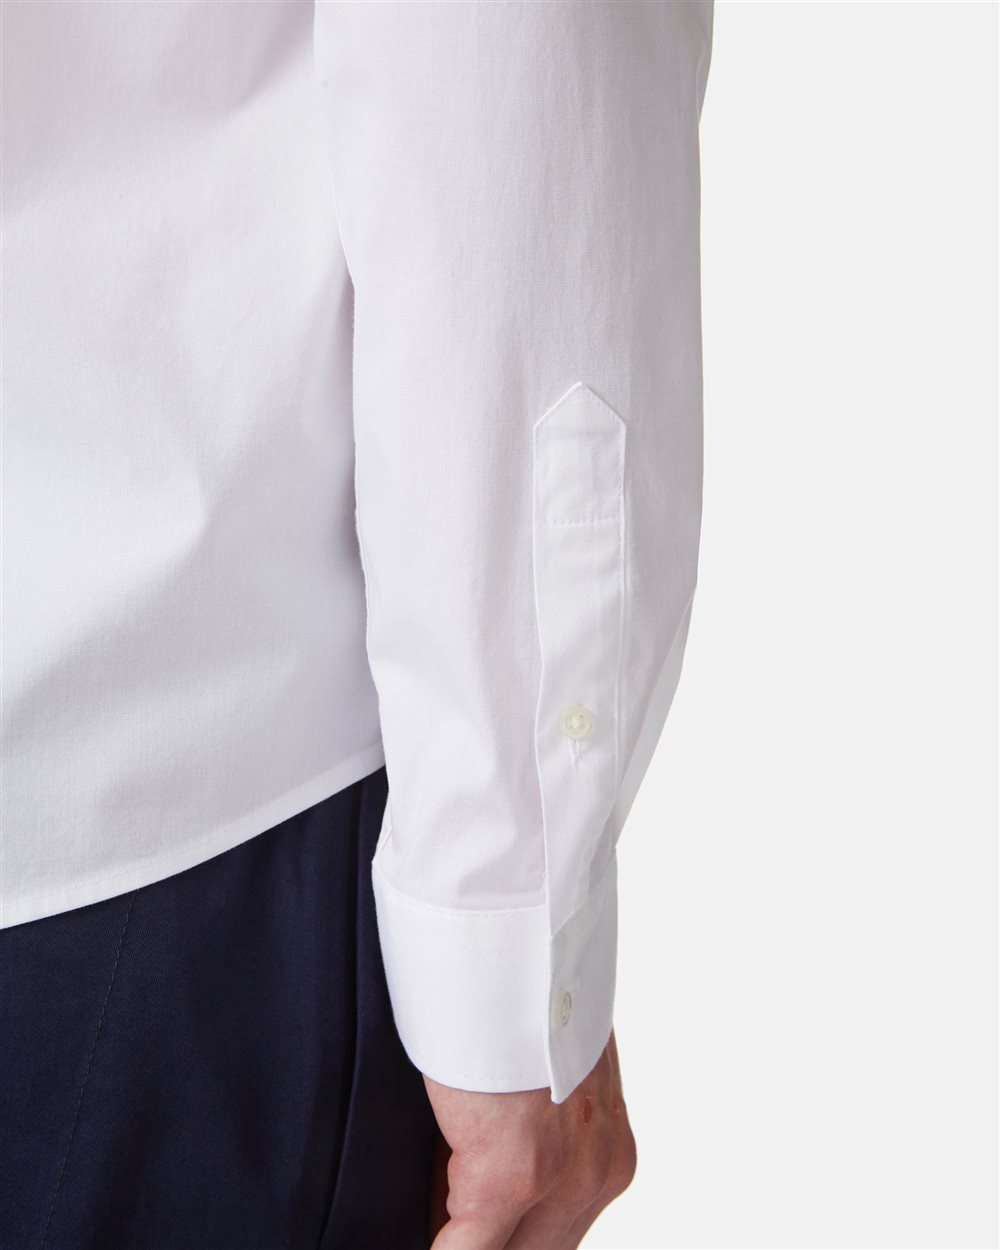 Camicia bianca con logo - Iceberg - Official Website